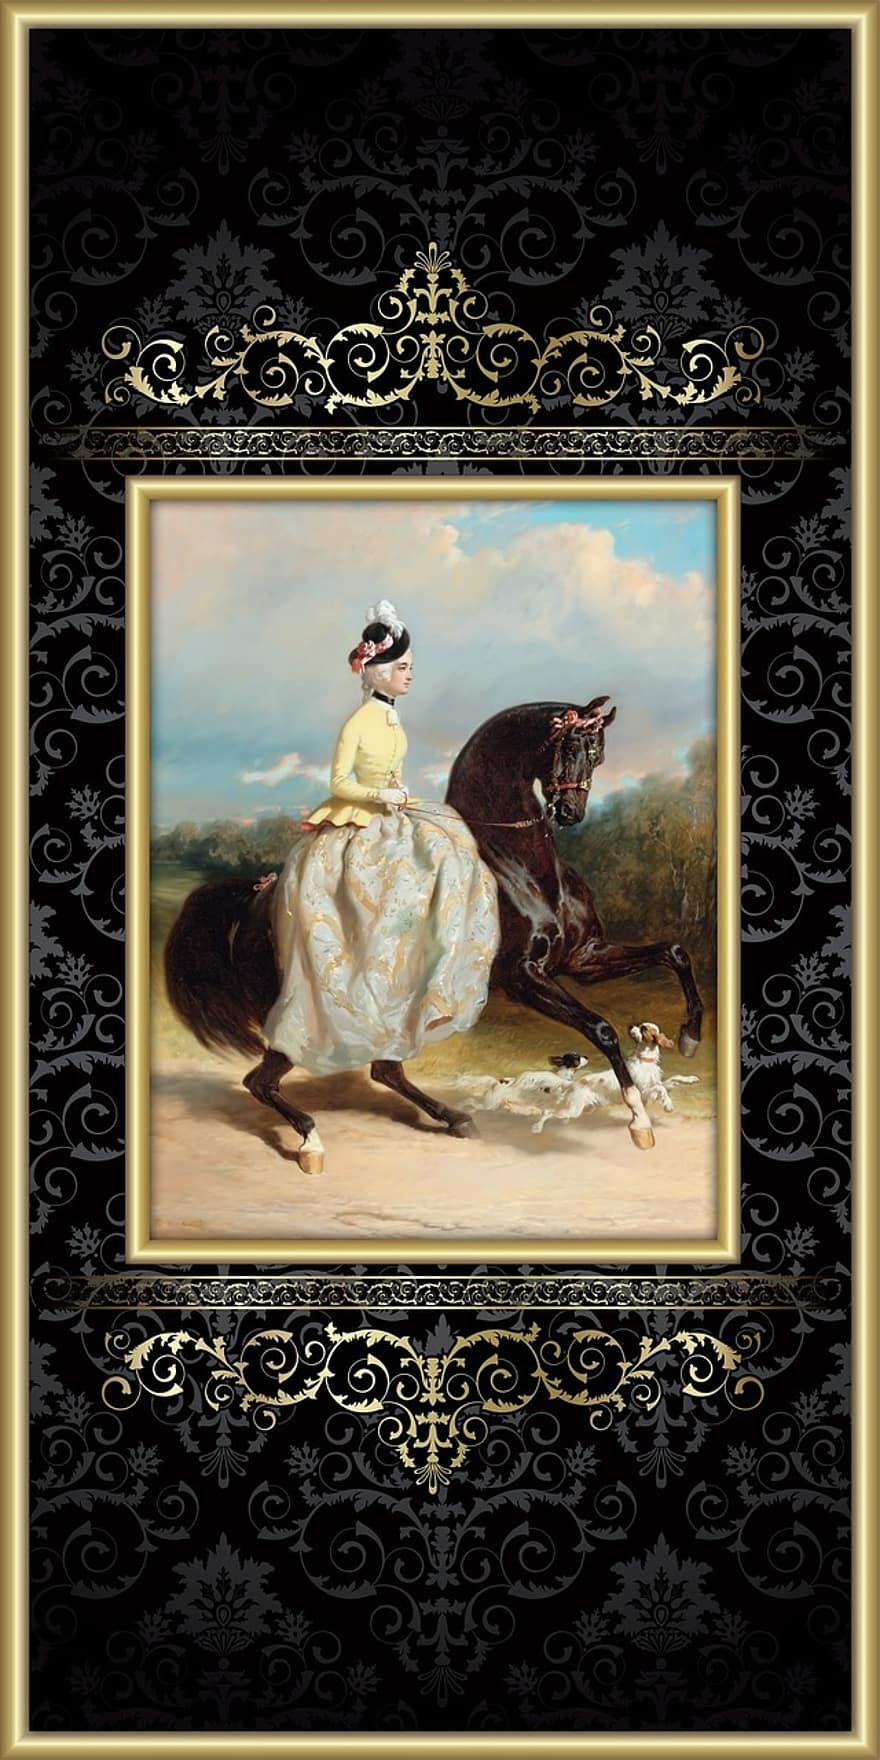 hest, kvinne, viktoriansk, ride, horsemanship, dame, riding, rytter, hund, spaniel, elegant